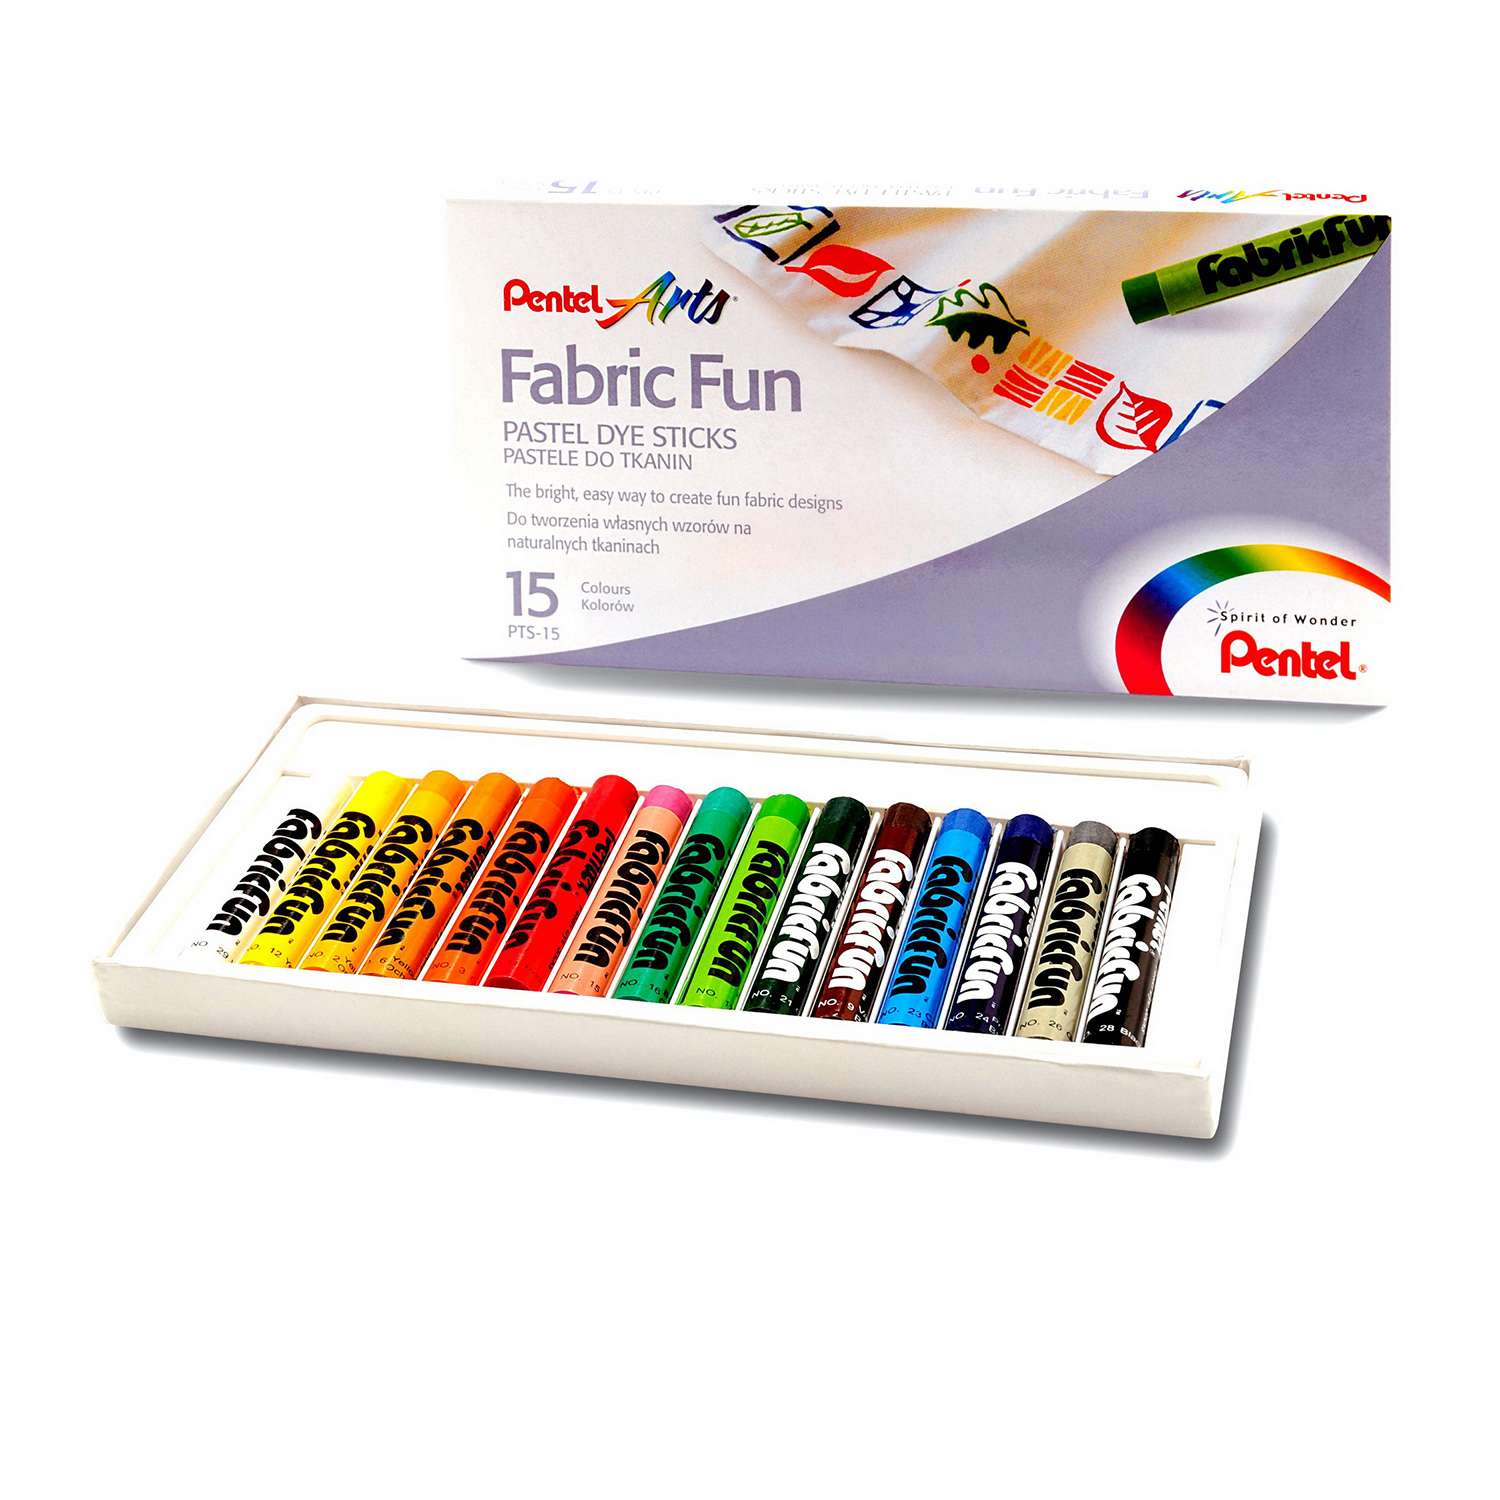 Пастель  Pentel для ткани FabricFun Pastels 15 штук - фото 1